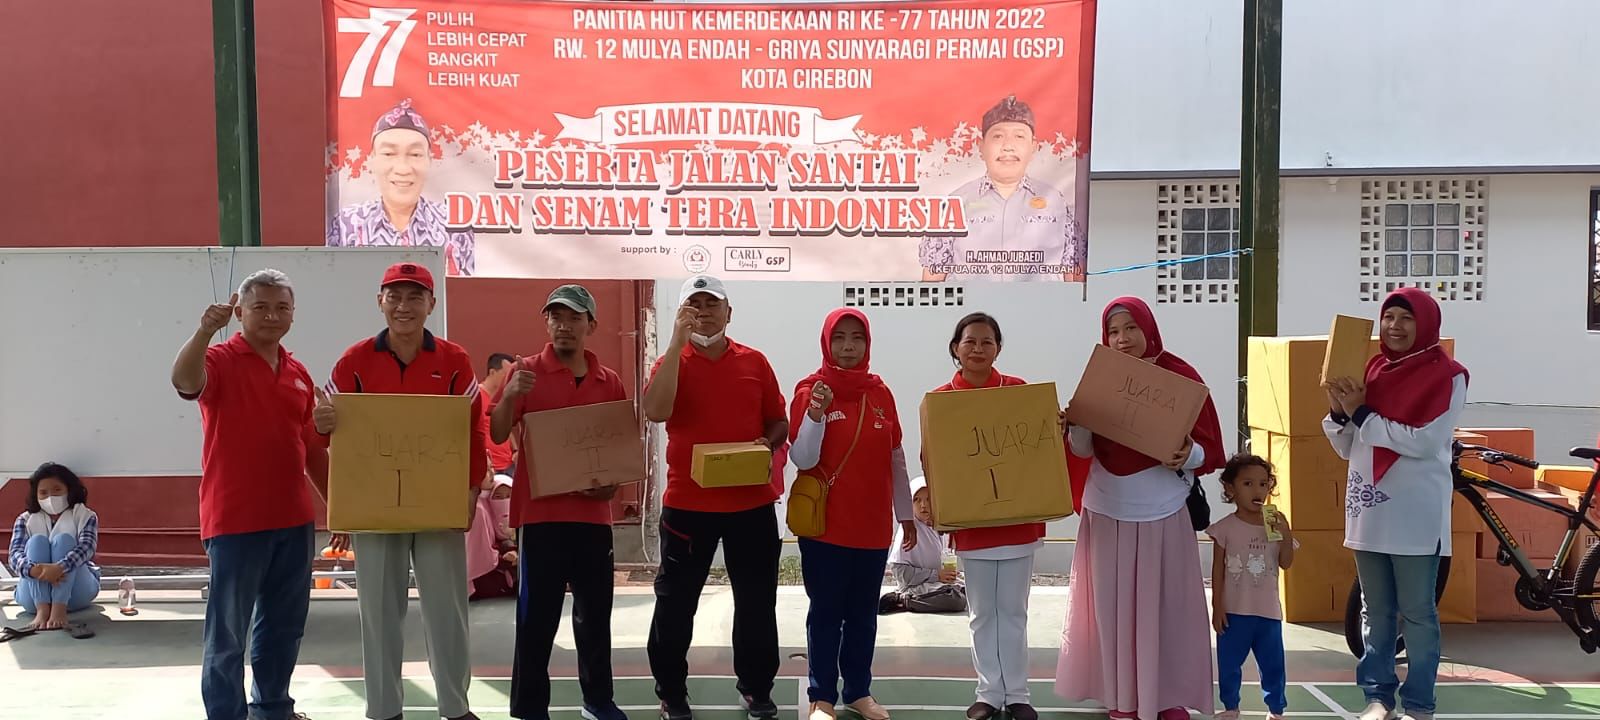 RW 12 Mulya Endah GSP Meriahkan Hari Kemerdekaan dengan Jalan Santai dan Senam Tera Indonesia 